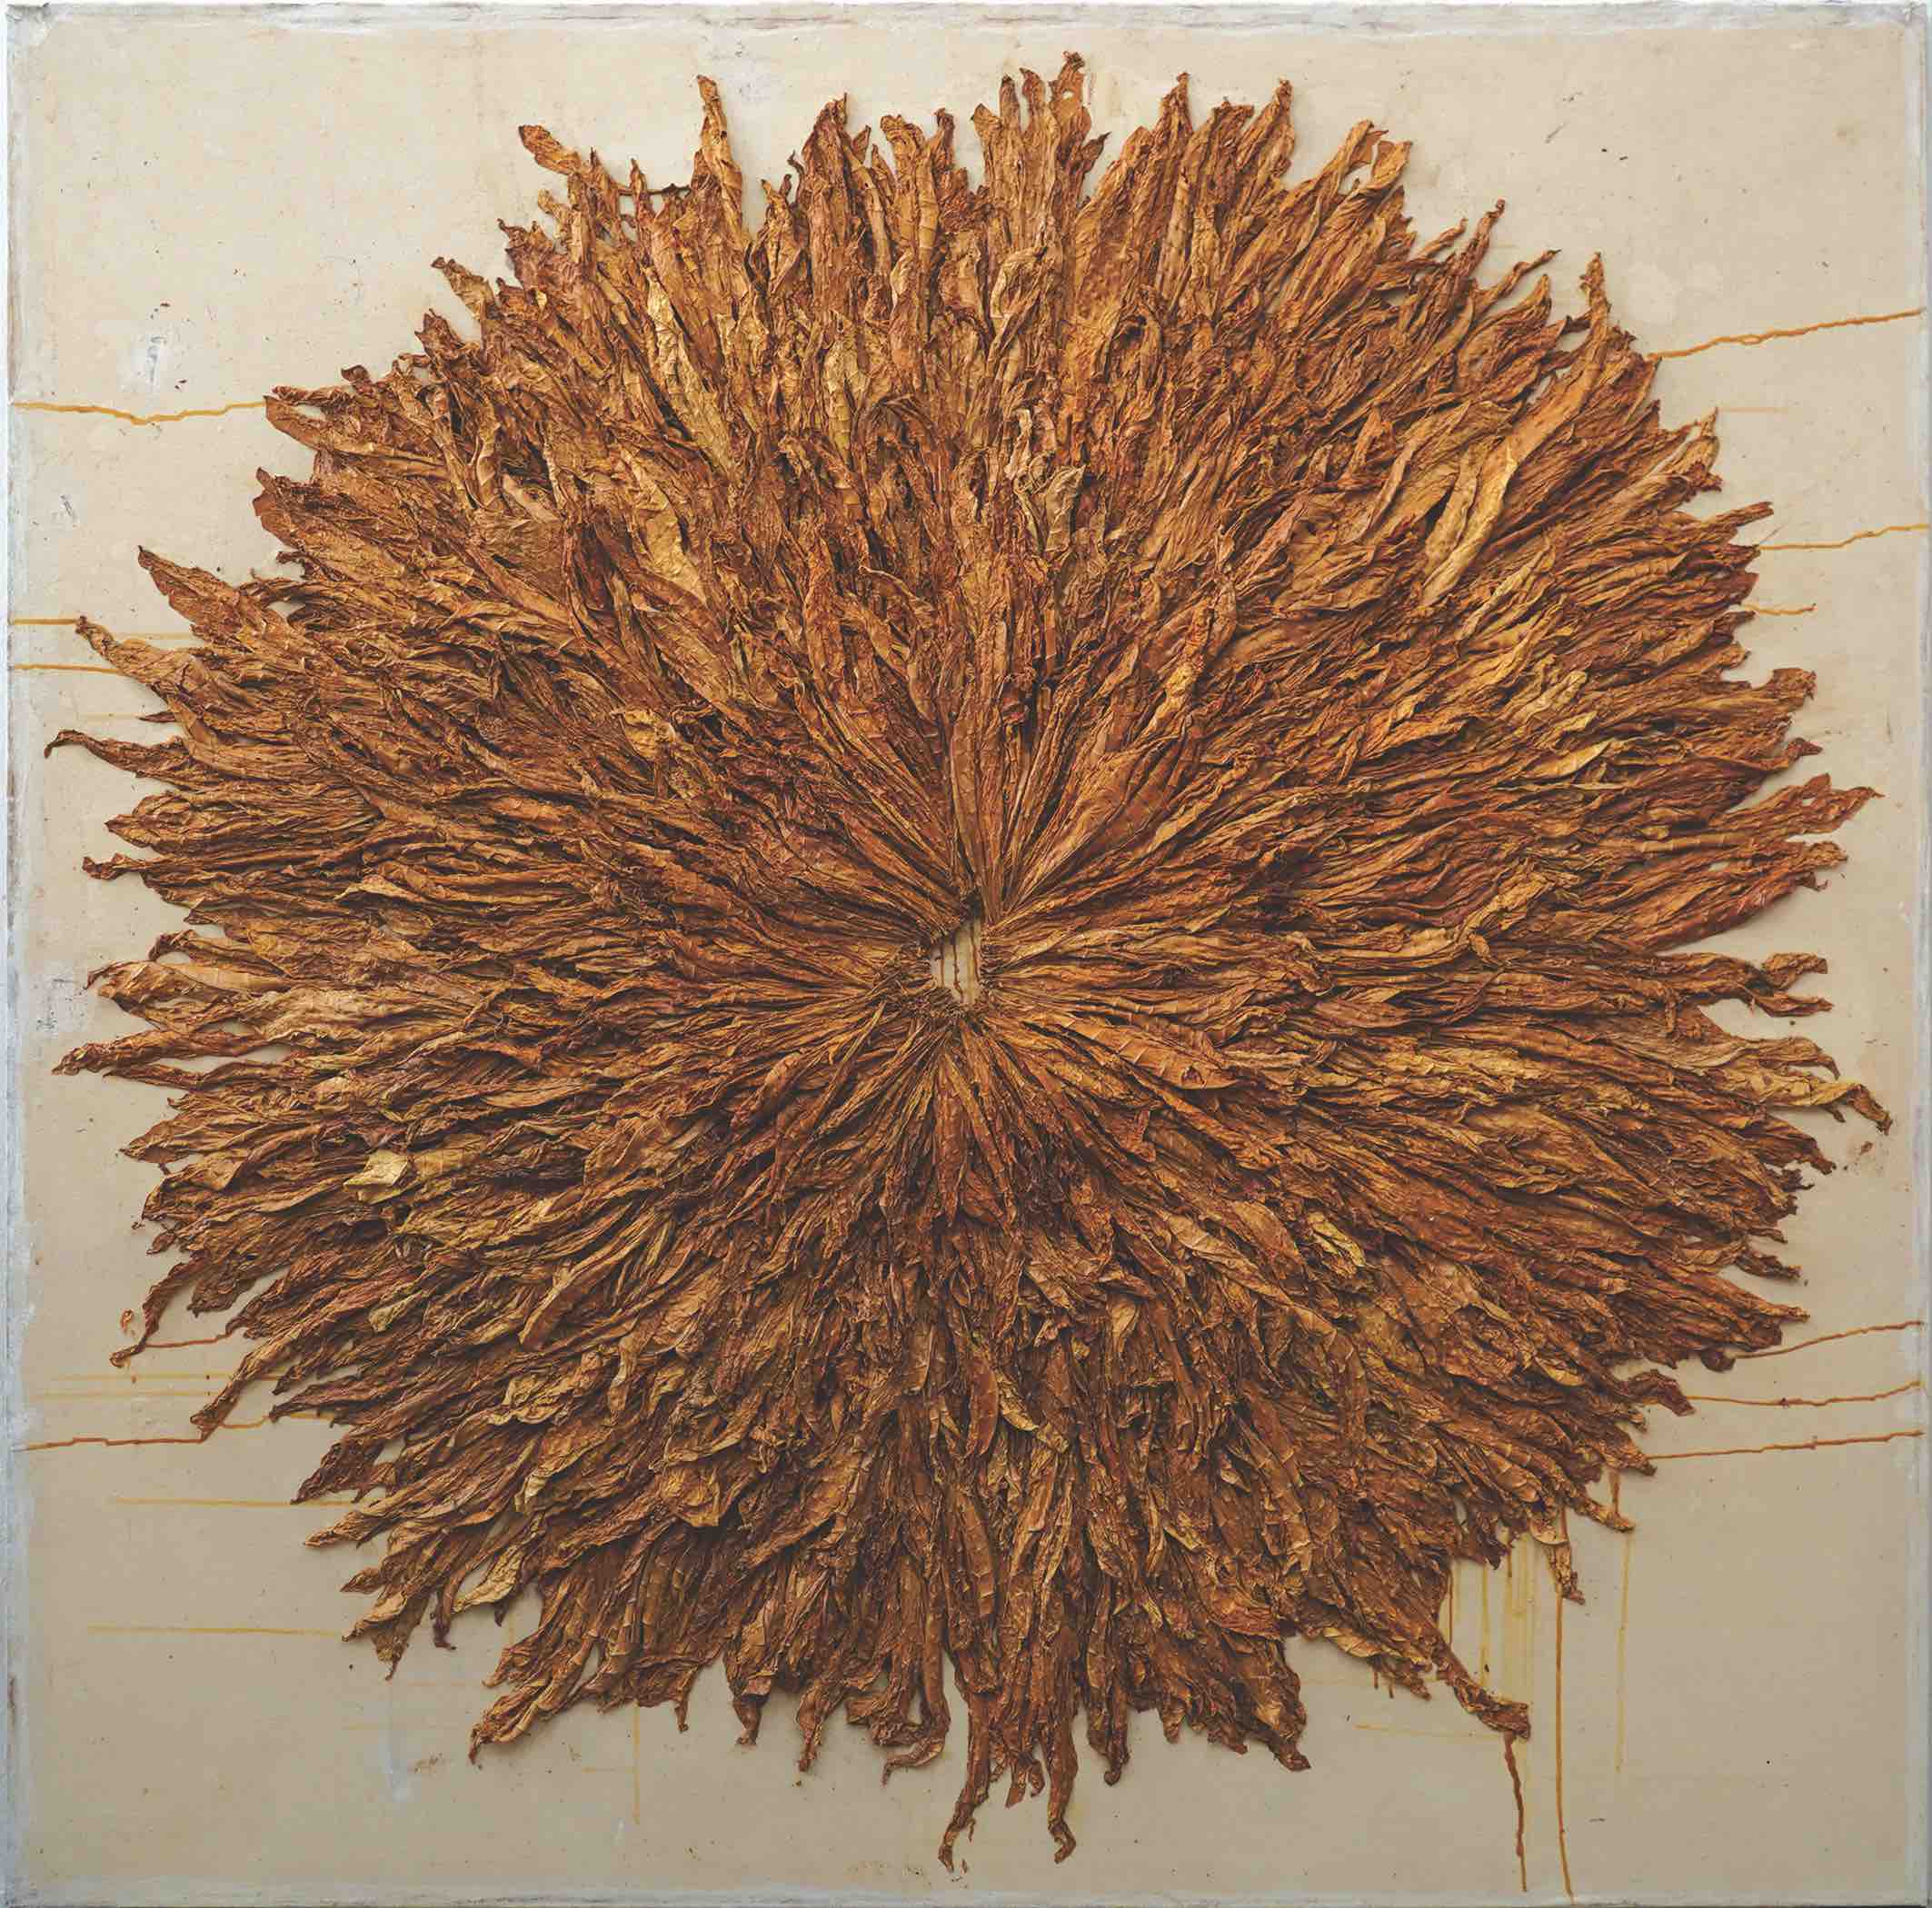 2.Πάνος Χαραλάμπους, Ήλιος, 1998, μικτή τεχνική, φύλλα καπνού πάνω σε καμβά. Παραχώρηση της CITRONNE Gallery (Φωτογραφία: Αλεξάνδρα Μασμανίδη)